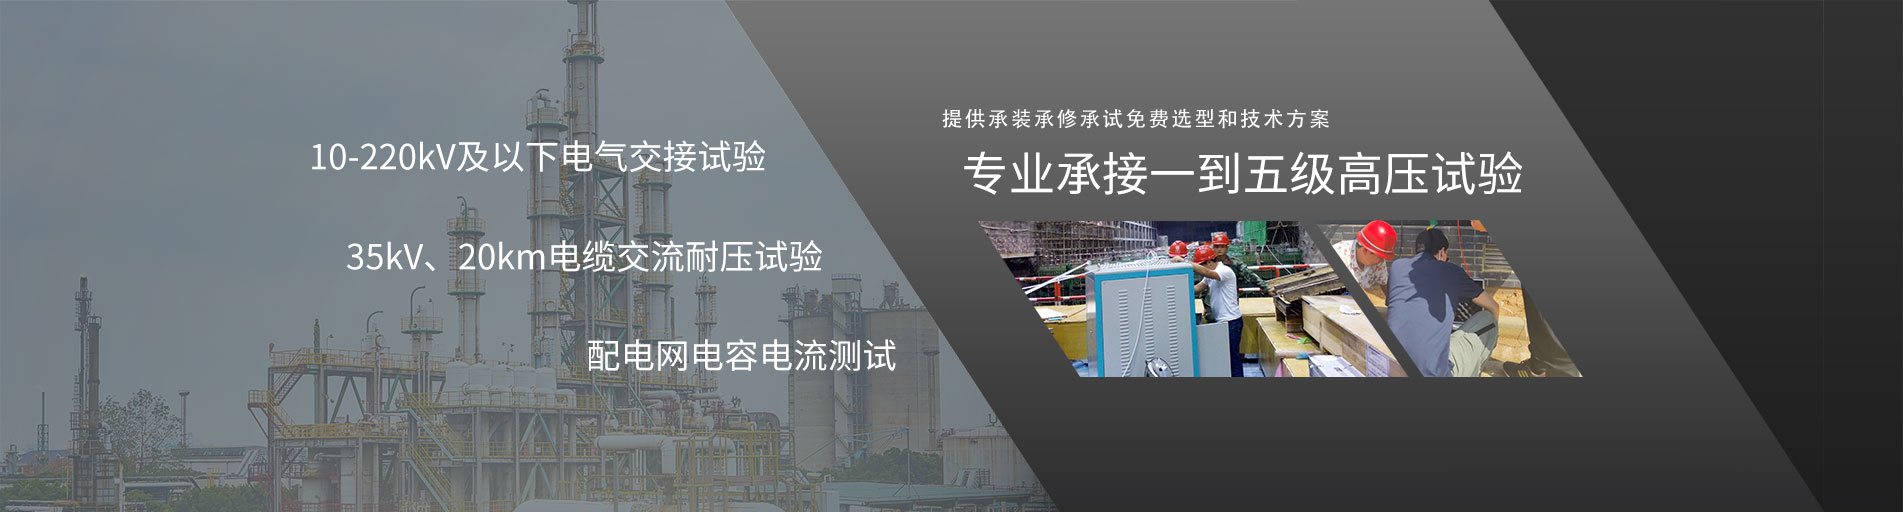 (中文) 承试电力为威士敦自动设备公司提供电力预防性试验服务